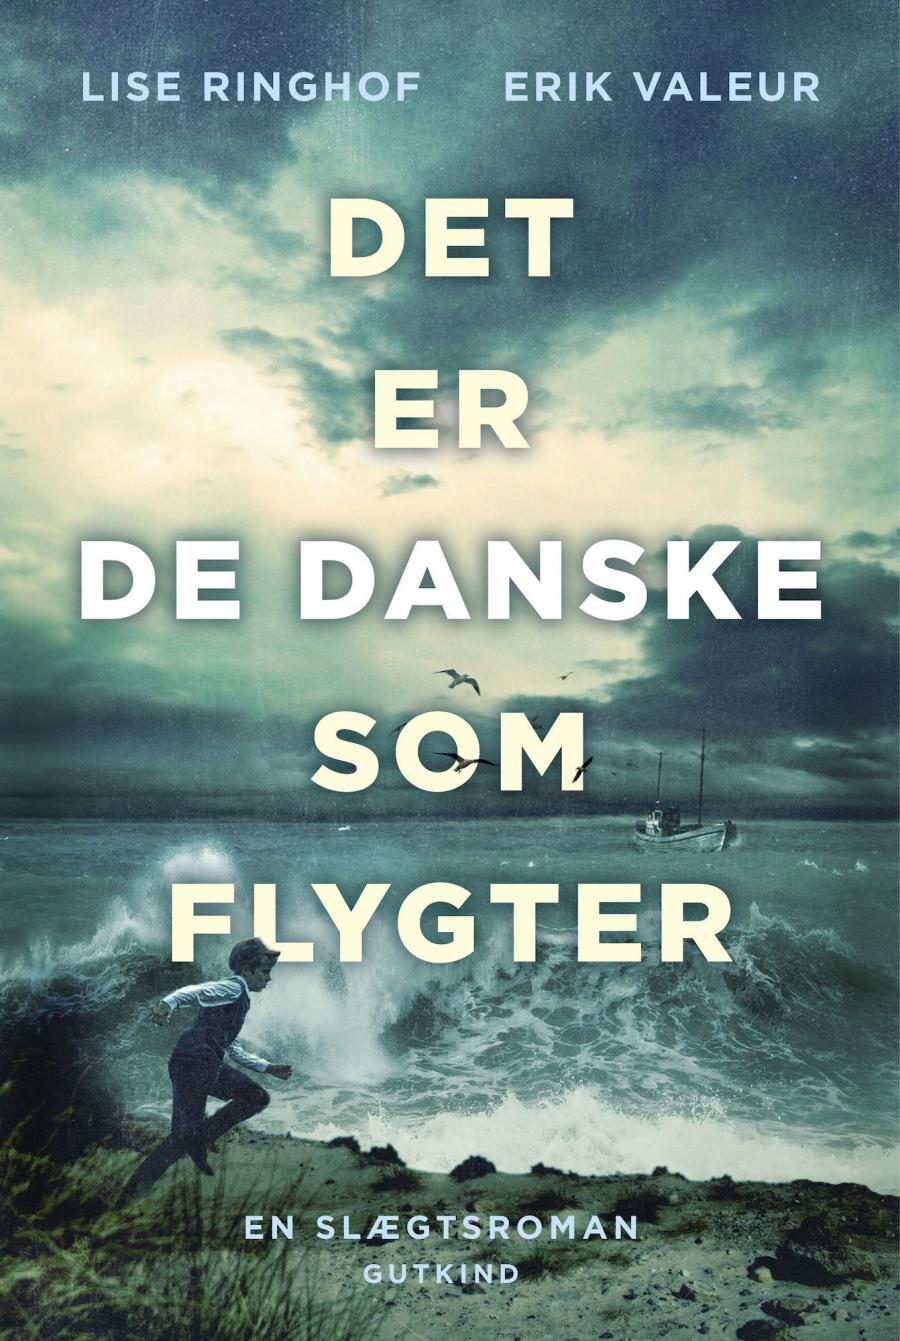 Bogforside af bogen "Det er de danske som flygter" af Lise Ringhof